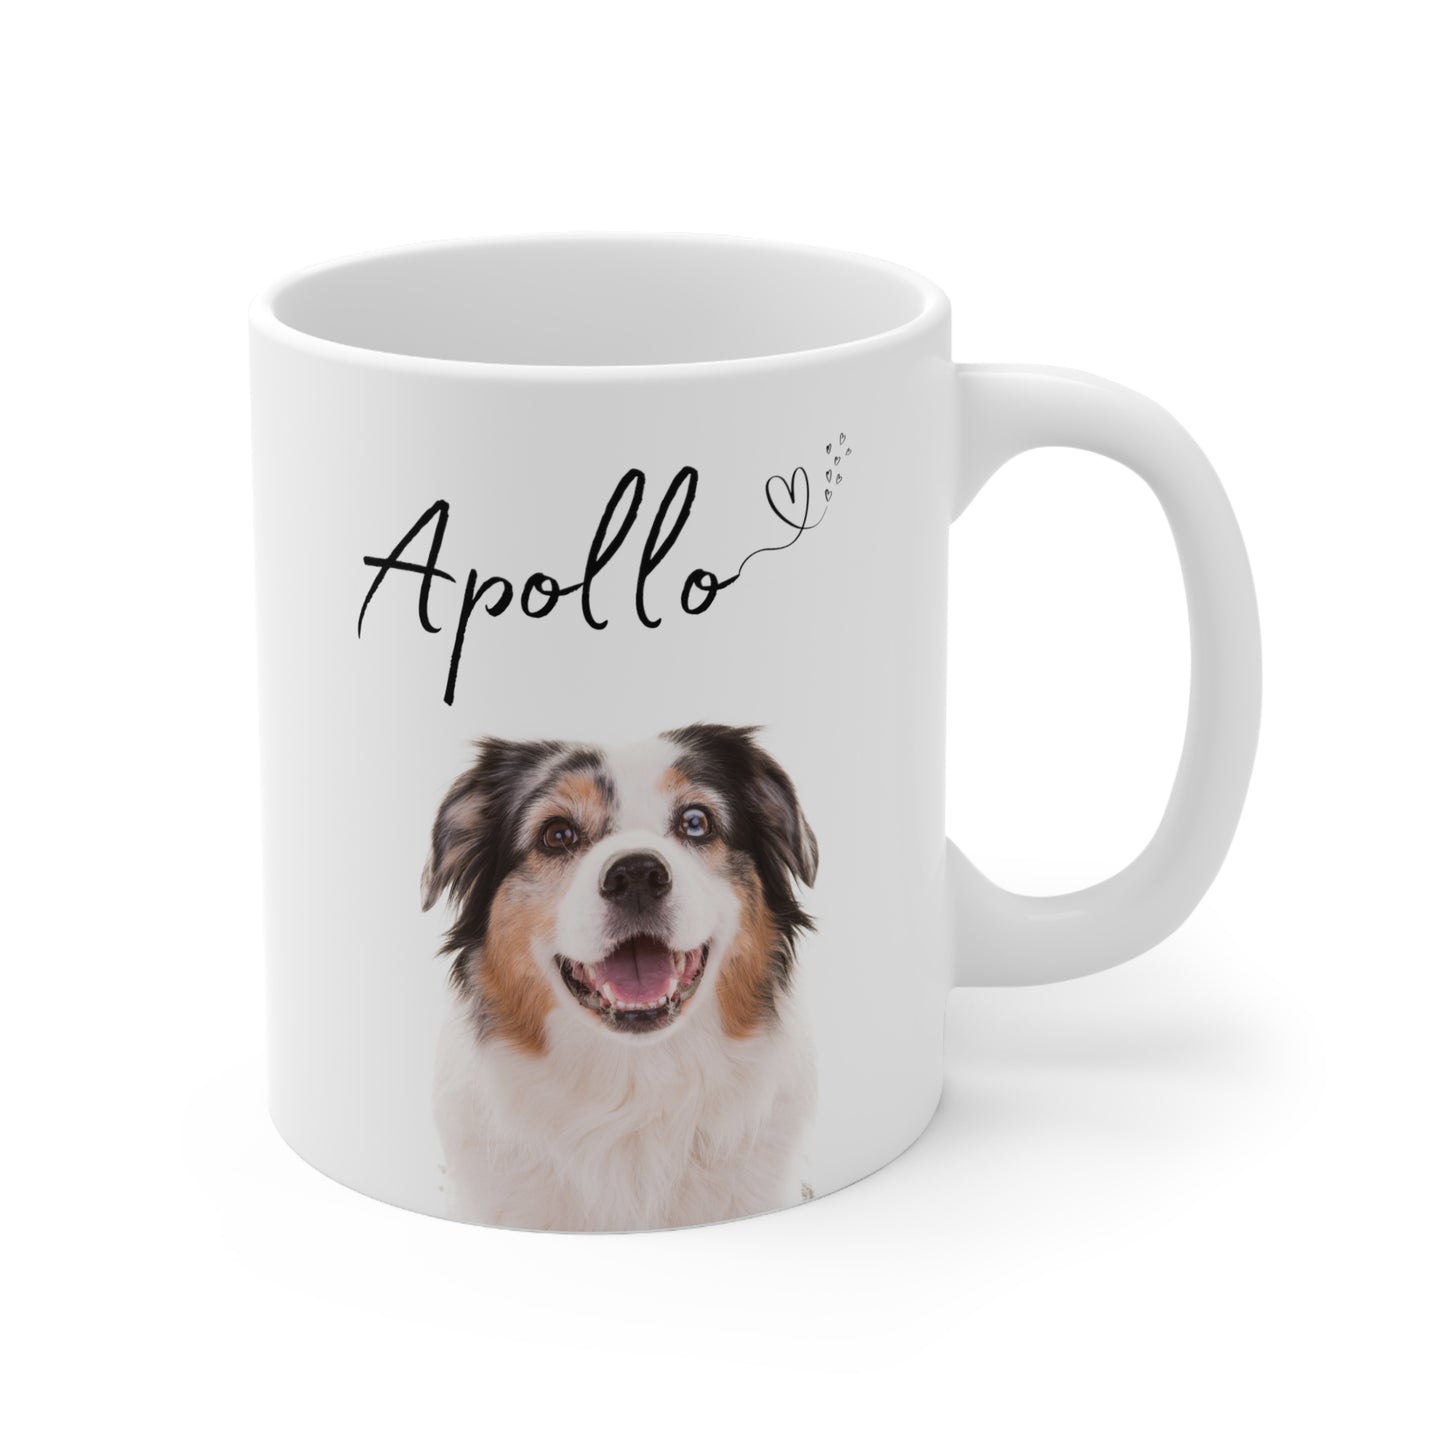 Apollo Customised Birthday Mug for Dog, Ceramic Mug 11oz